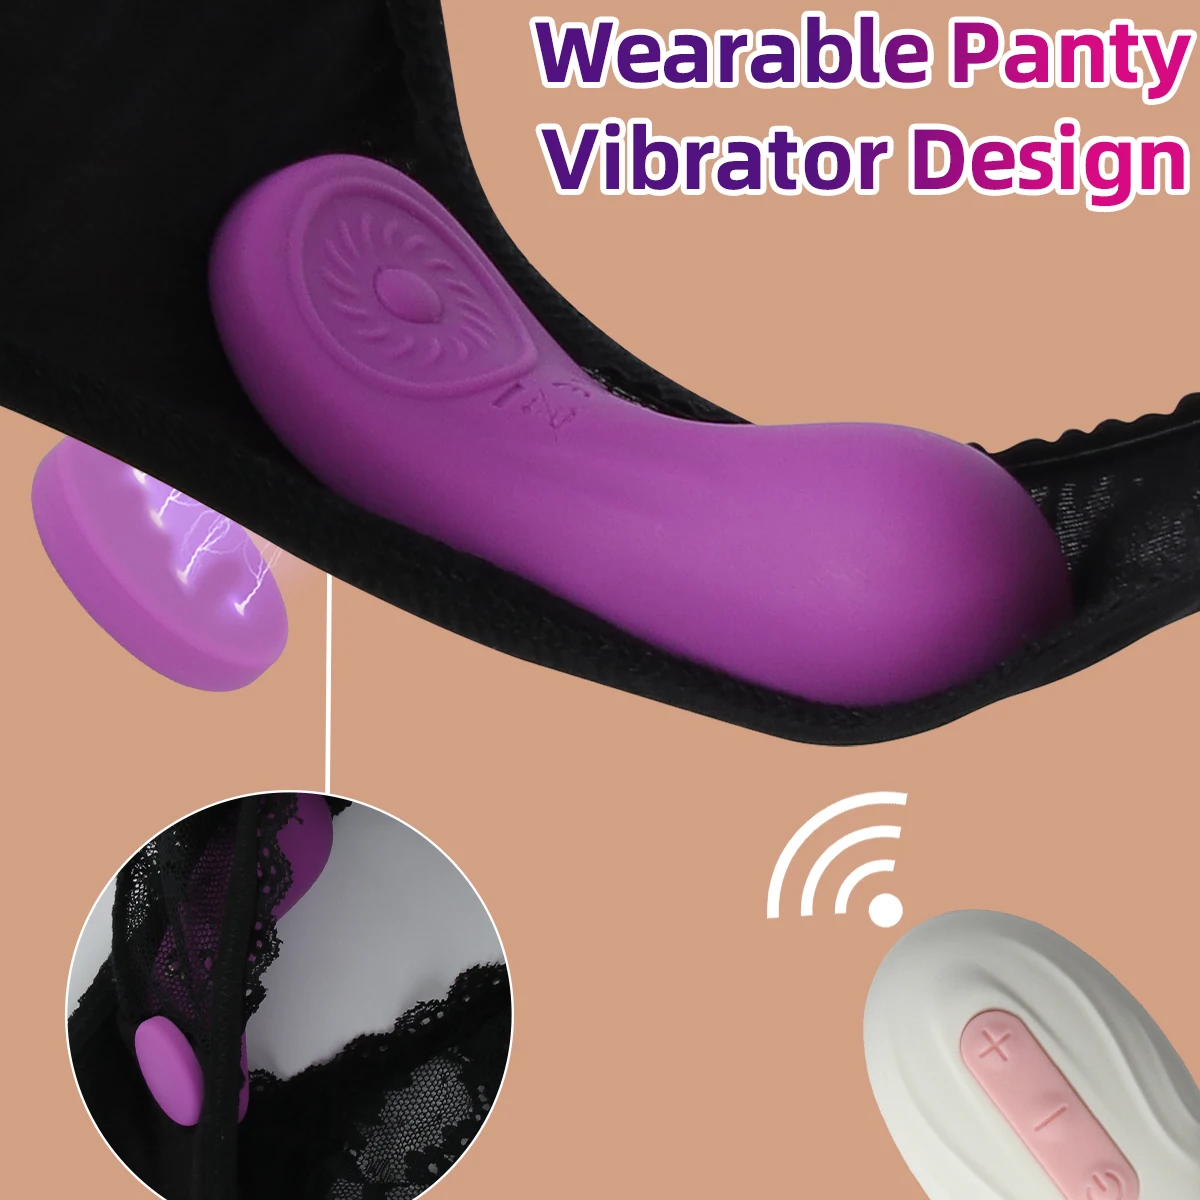 Panties Vibrator Female Wearable Mini Vibro Adult Toys Clitoris Stimulator Remote Control Vibrating Massager Sex Toys For Women Sex Toys For Women cb5feb1b7314637725a2e7: Pink Box|Purple - box